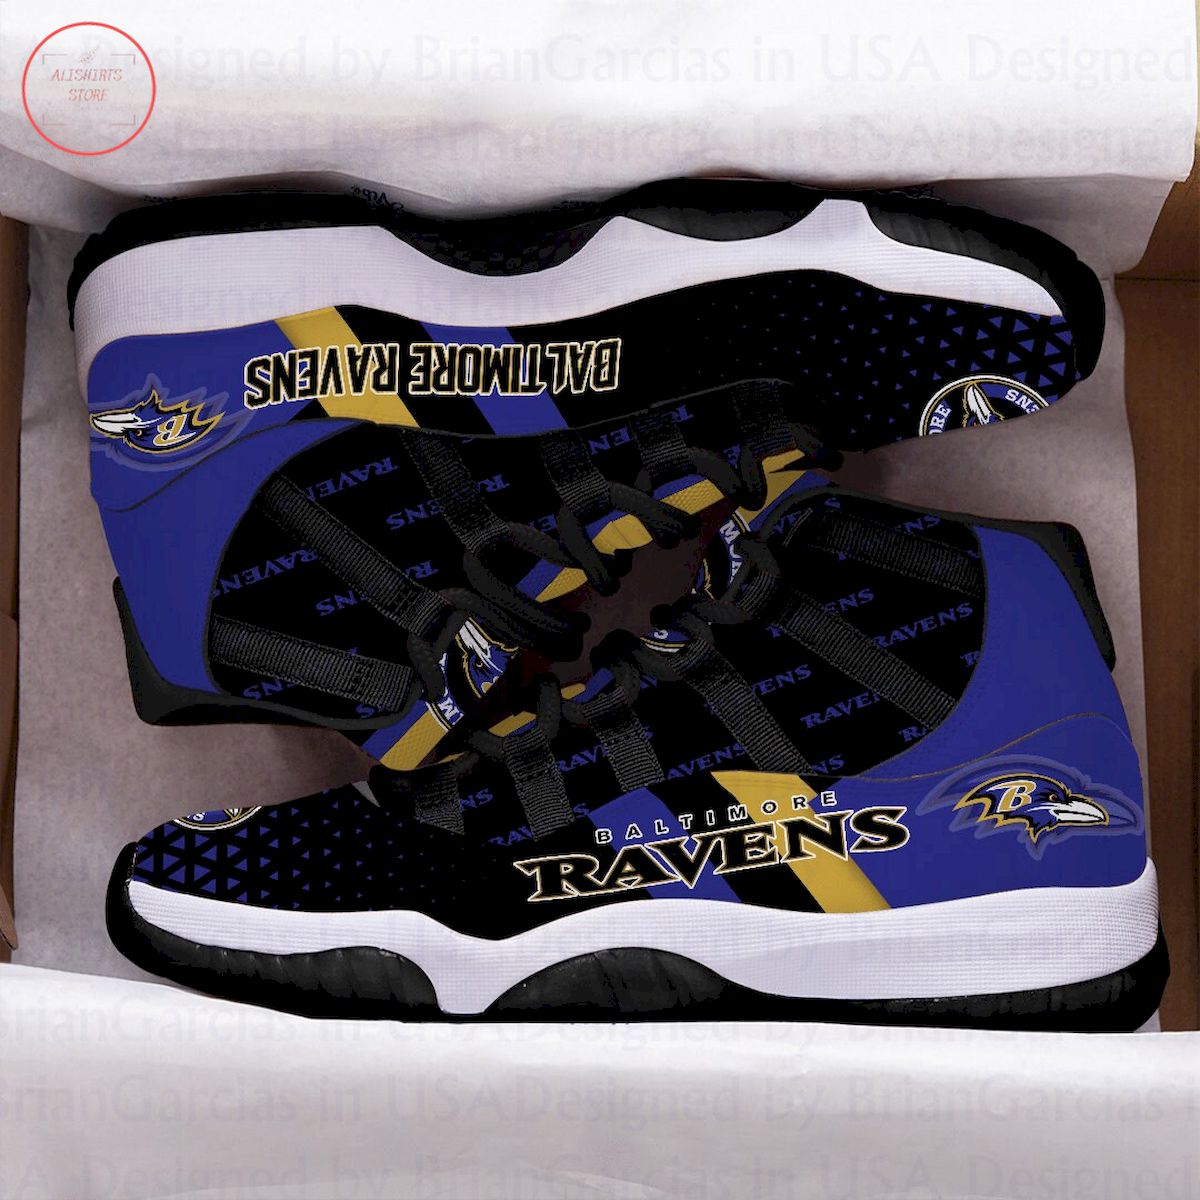 Baltimore Ravens Air Jordan 11 Sneakers